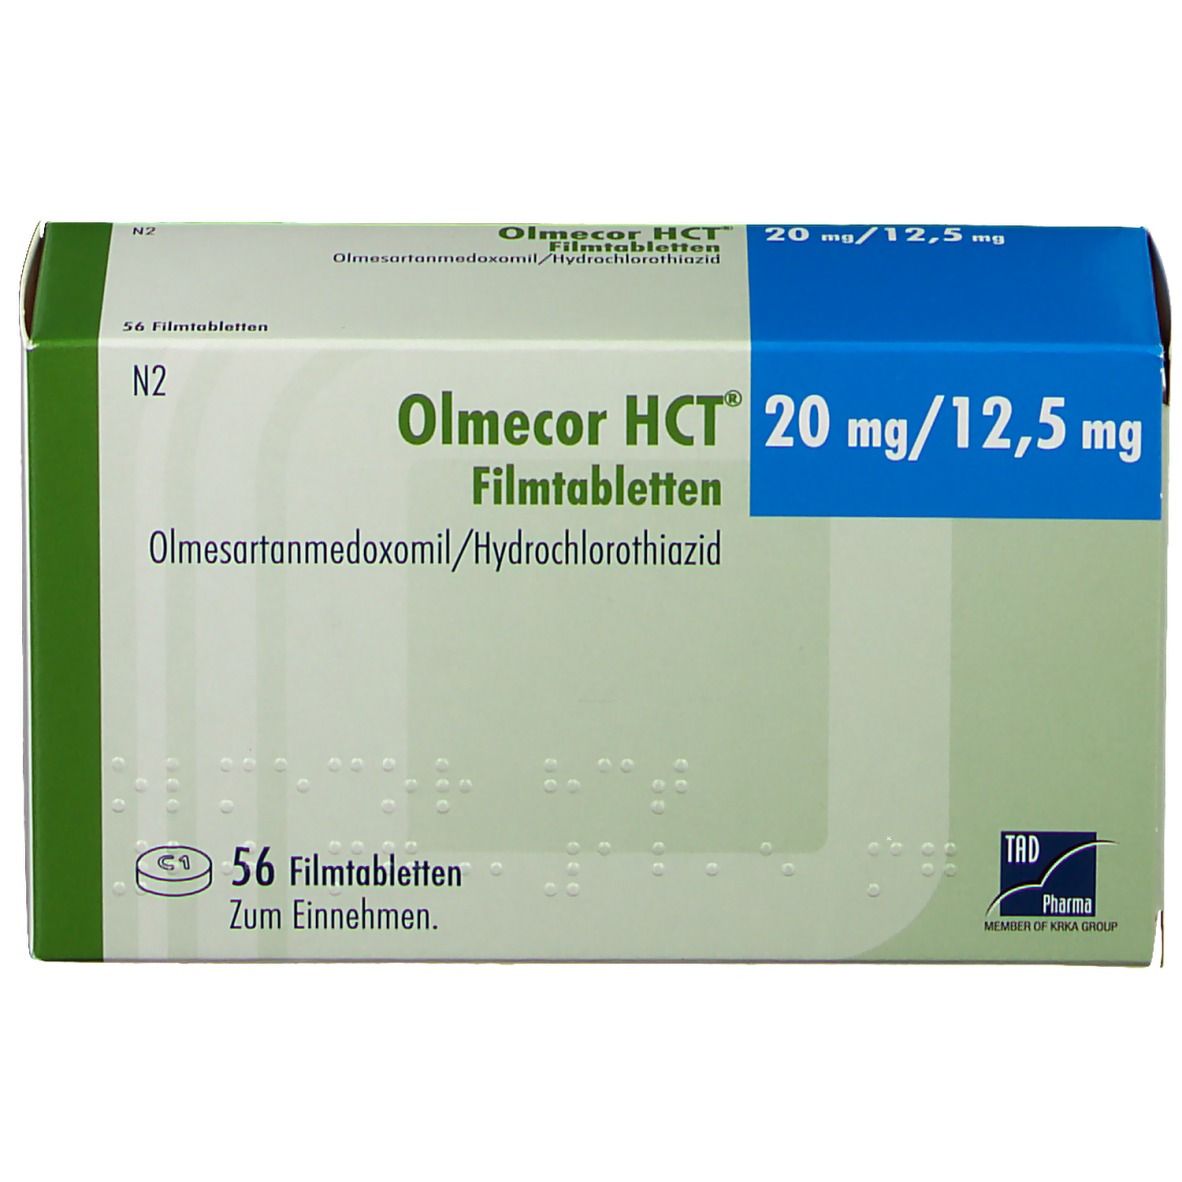 Olmecor HCT® 20 mg/12,5 mg